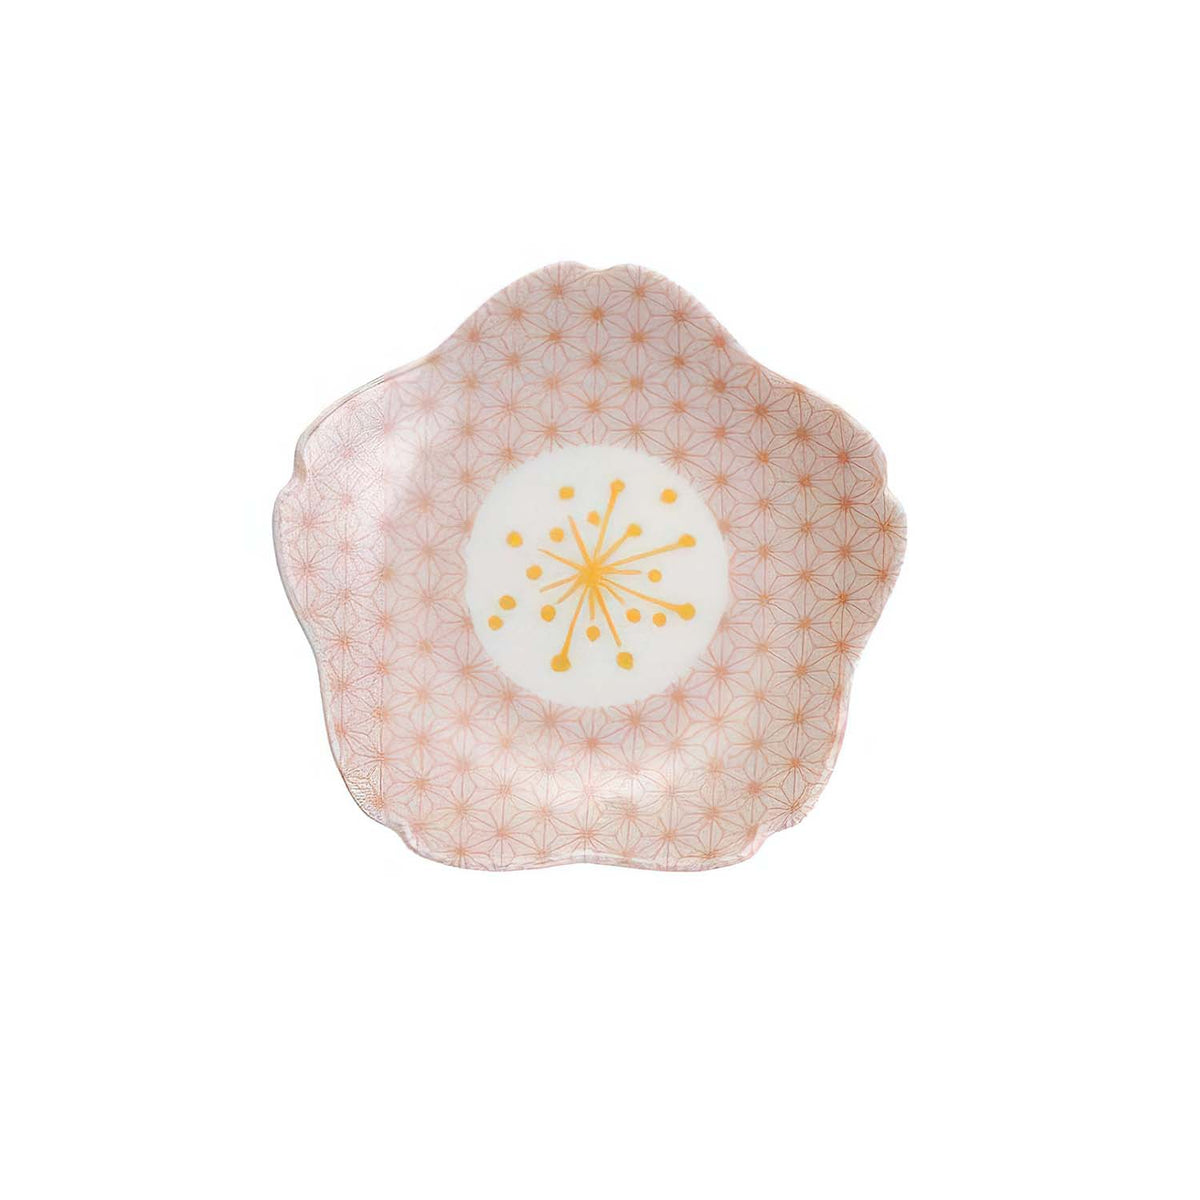 HAREKUTANI Porcelain Sakura Plate Asanoha